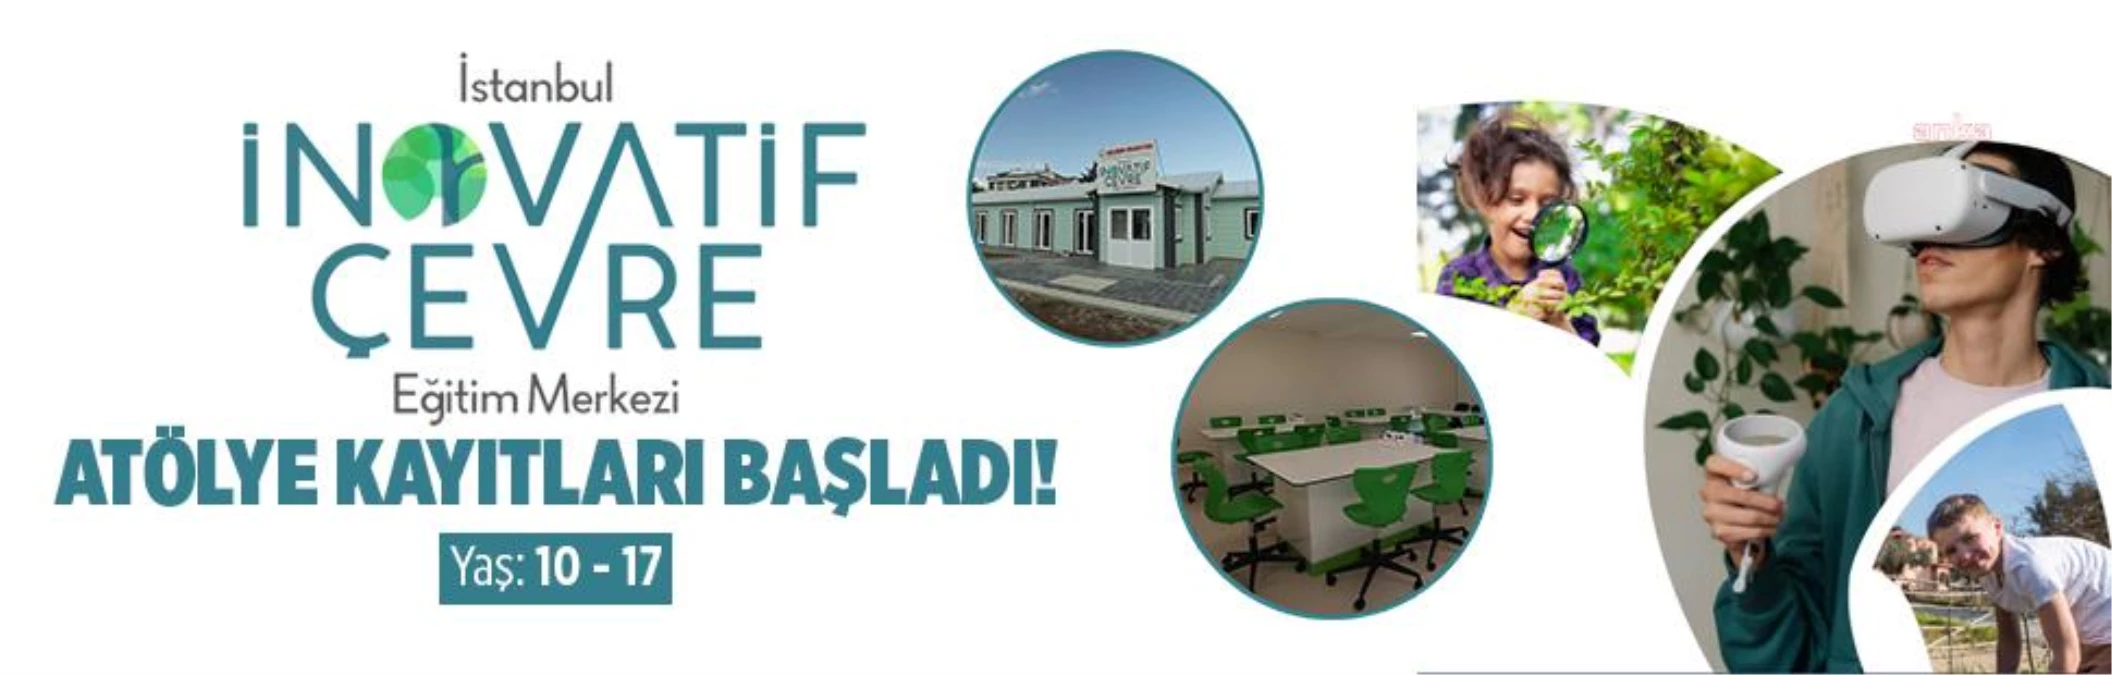 İstanbul İnovatif Çevre Eğitim Merkezi\'nde Atölye Kayıtları Başladı